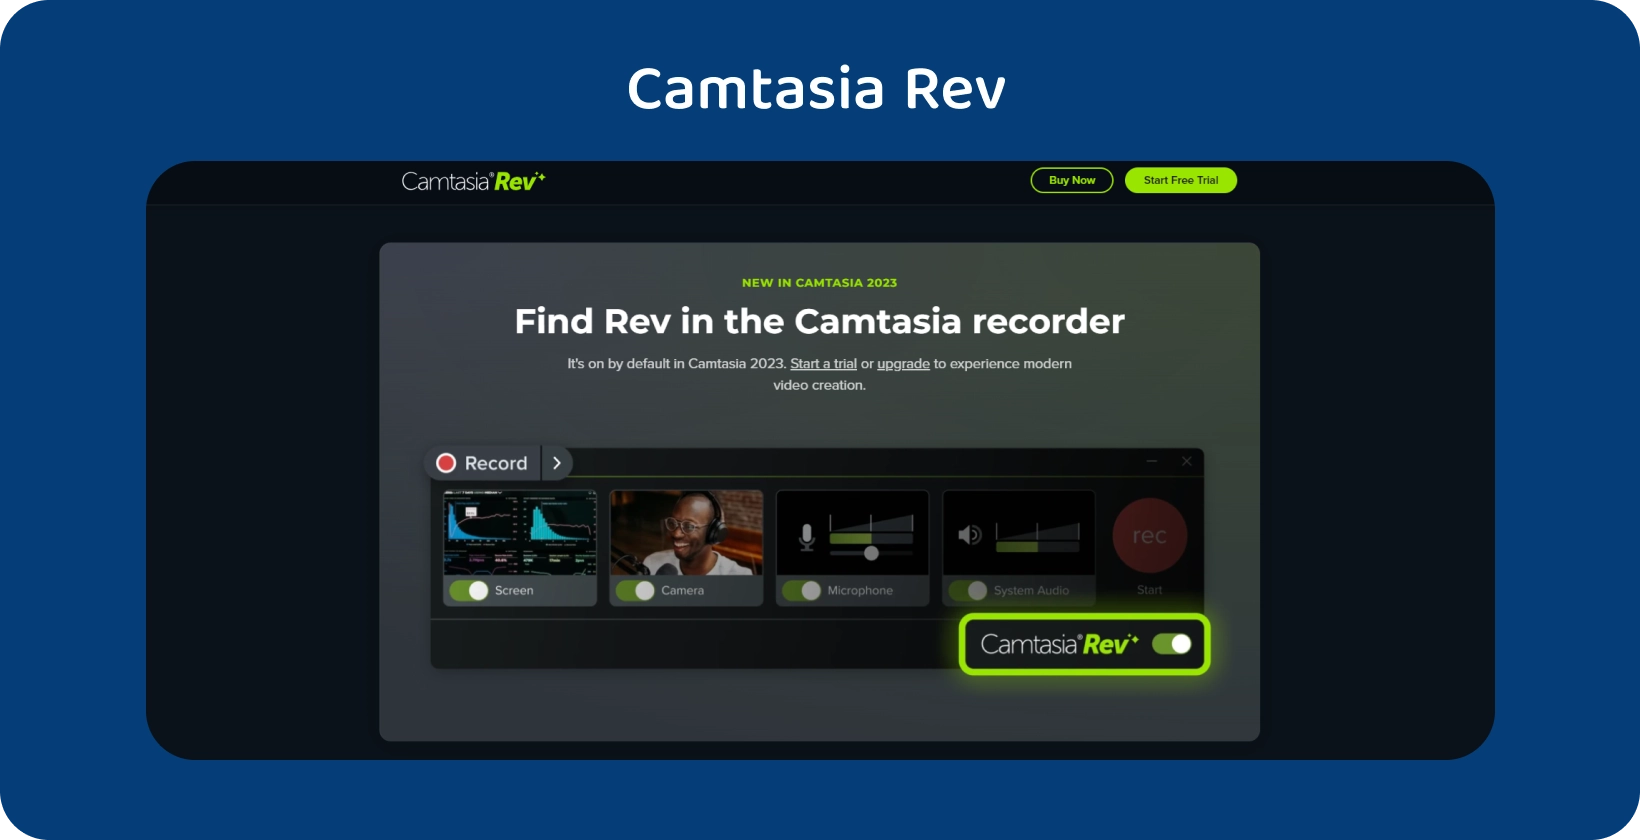 Il banner della home page di Camtasia Rev, che mostra gli strumenti di creazione video assistiti da AI per una migliore produzione video.